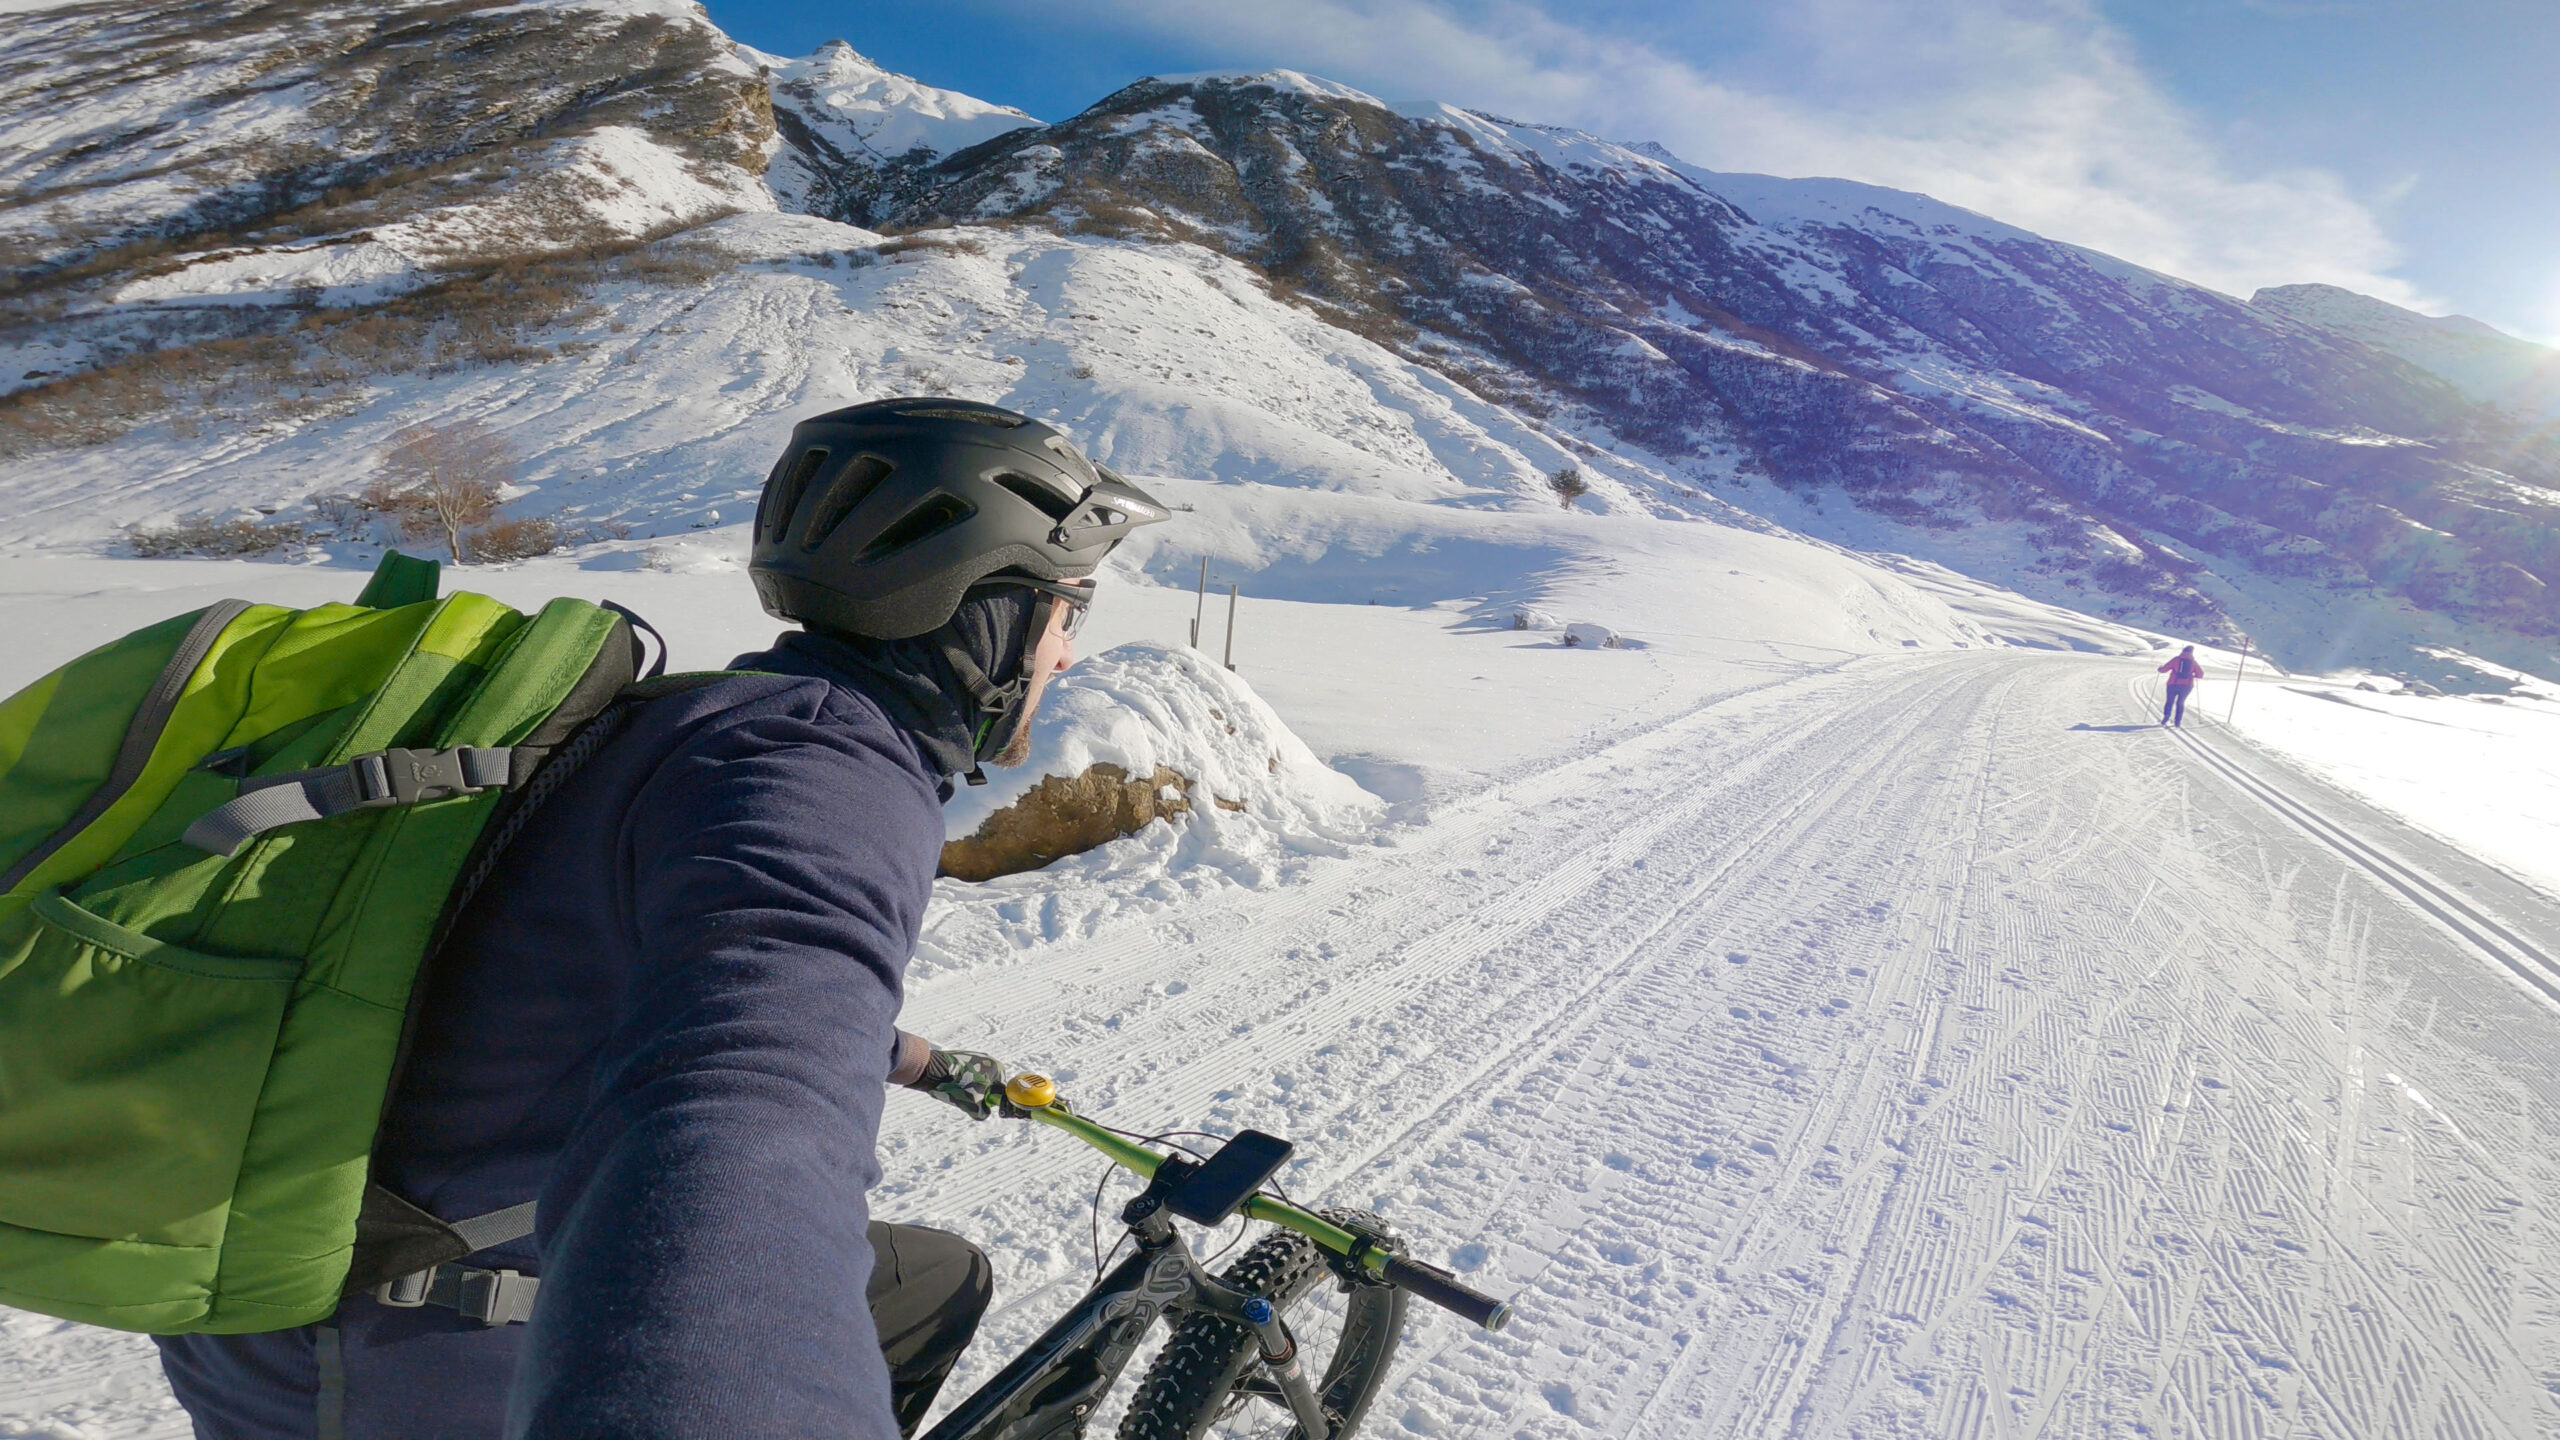 Fahrrad fahren im Schnee | FATBIKE Winter Tour Ischgl - Bielerhöhe 🇦🇹